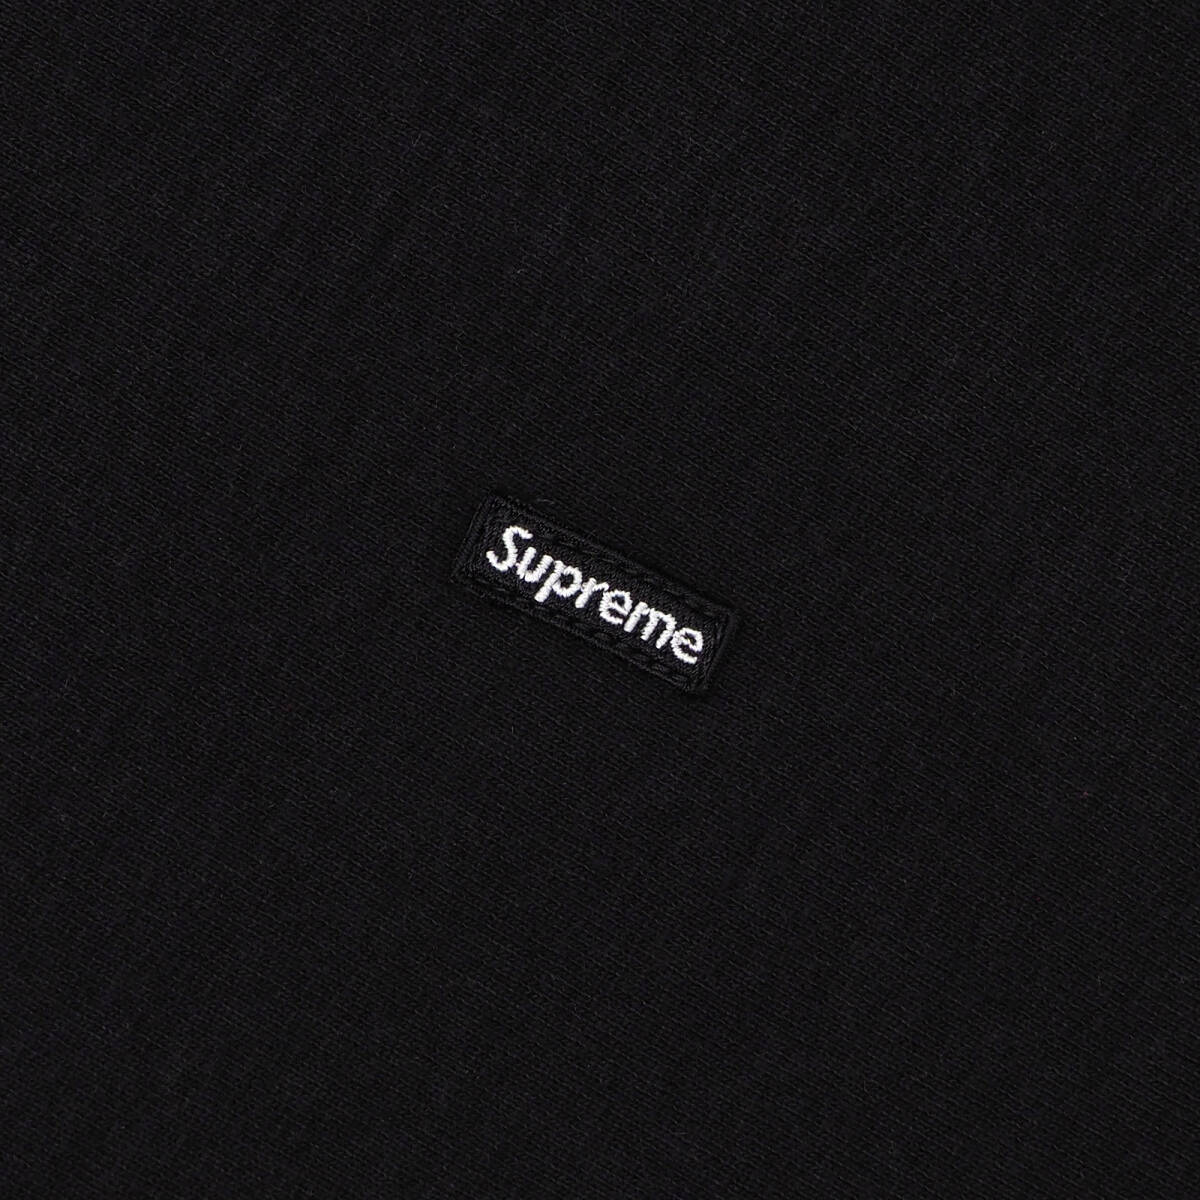 Supreme - Small Box Hooded Sweatshirt 黒L シュプリーム - スモール ボックス フーデッド スウェットシャツ 2022FWの画像3